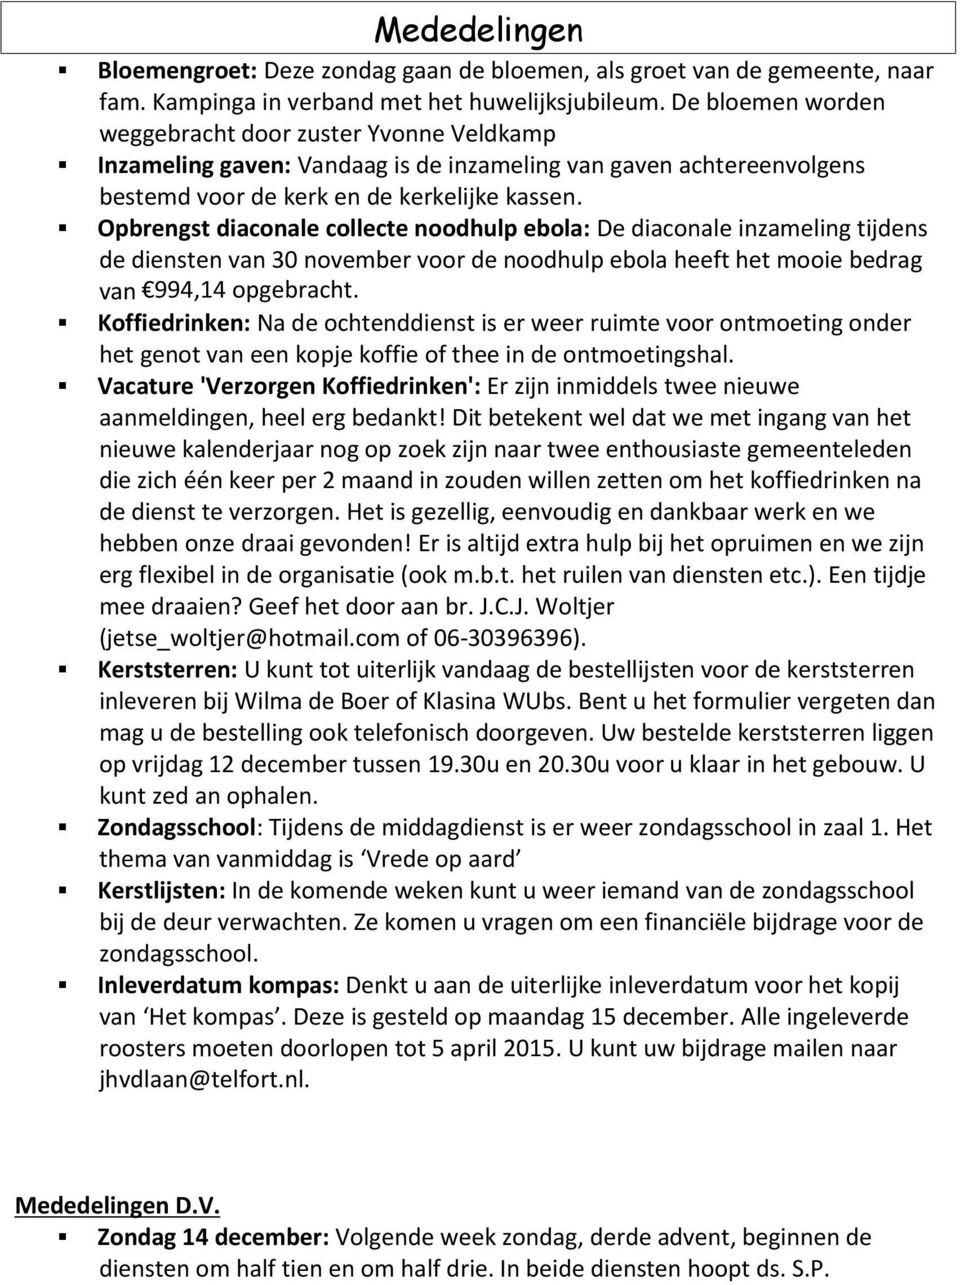 Opbrengst diaconale collecte noodhulp ebola: De diaconale inzameling tijdens de diensten van 30 november voor de noodhulp ebola heeft het mooie bedrag van 994,14 opgebracht.